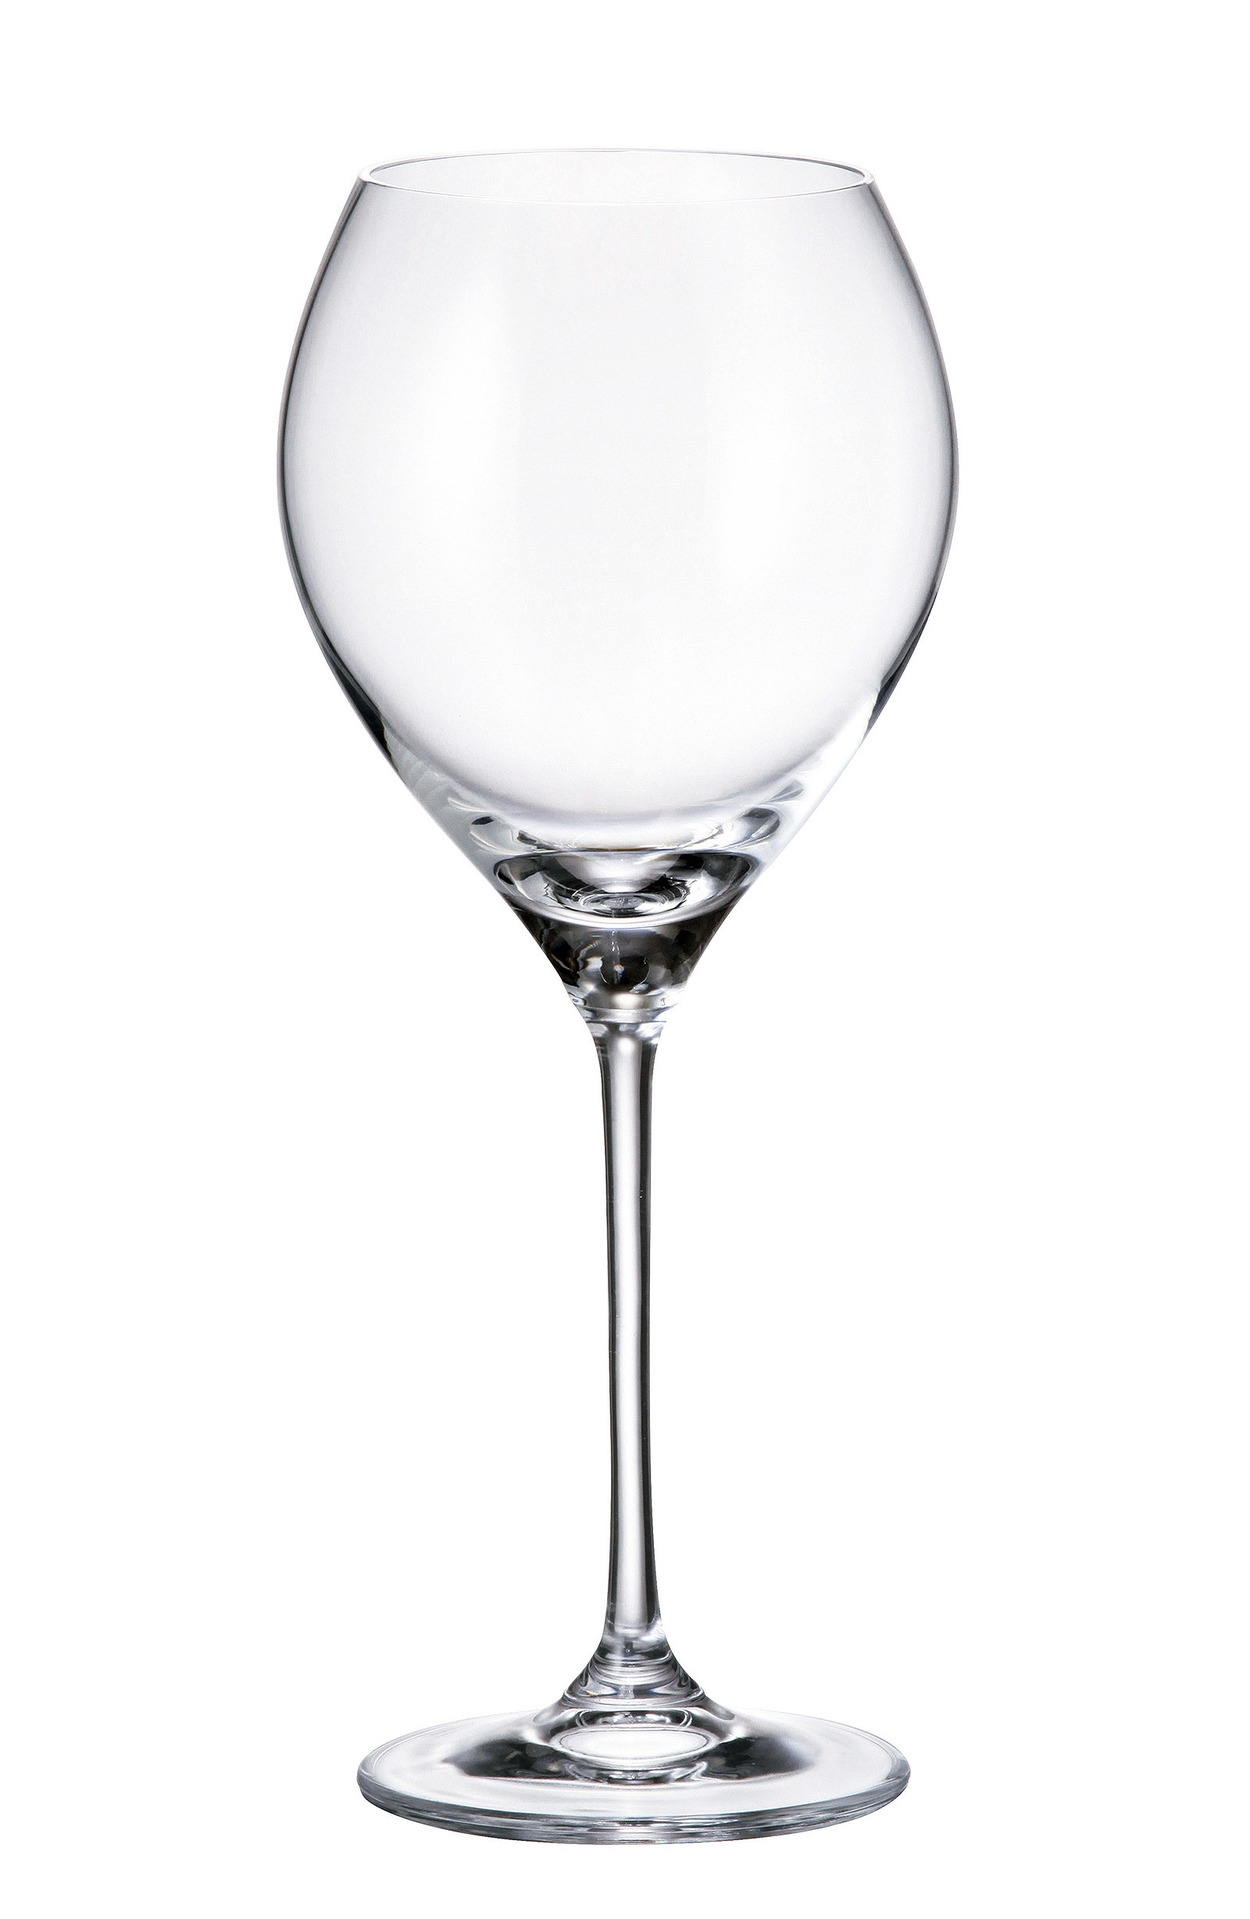 Ποτήρι Κρασιού Κρυστάλλινο Bohemia Carduelis 470ml CTB01F06470 (Σετ 6 Τεμάχια) (Υλικό: Κρύσταλλο, Χρώμα: Διάφανο , Μέγεθος: Κολωνάτο) - Κρύσταλλα Βοημίας - CTB01F06470